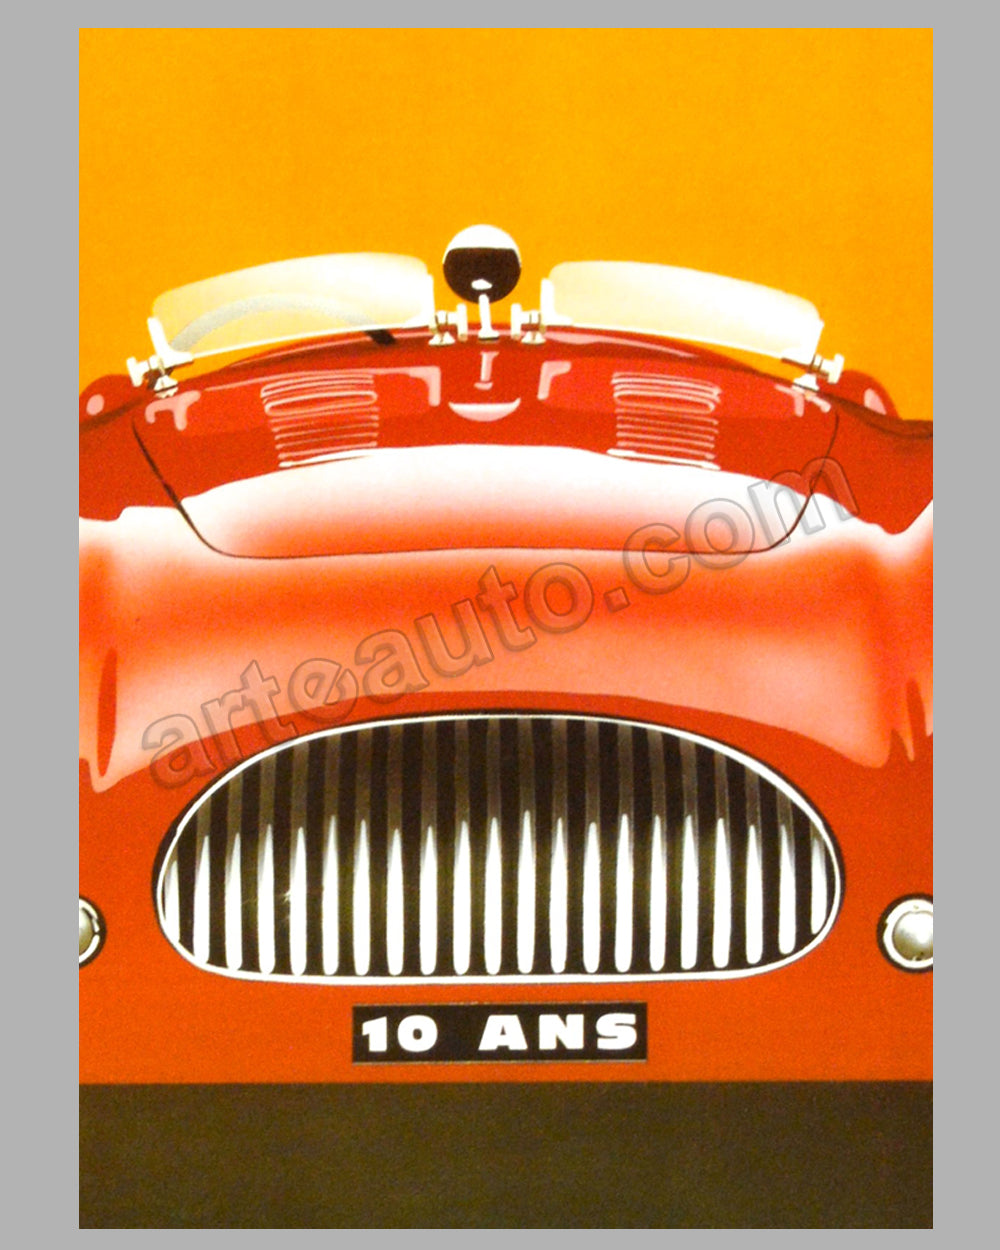 2002 Louis Vuitton Classic: Parc de Bagatelle Poster by Razzia, On Linen